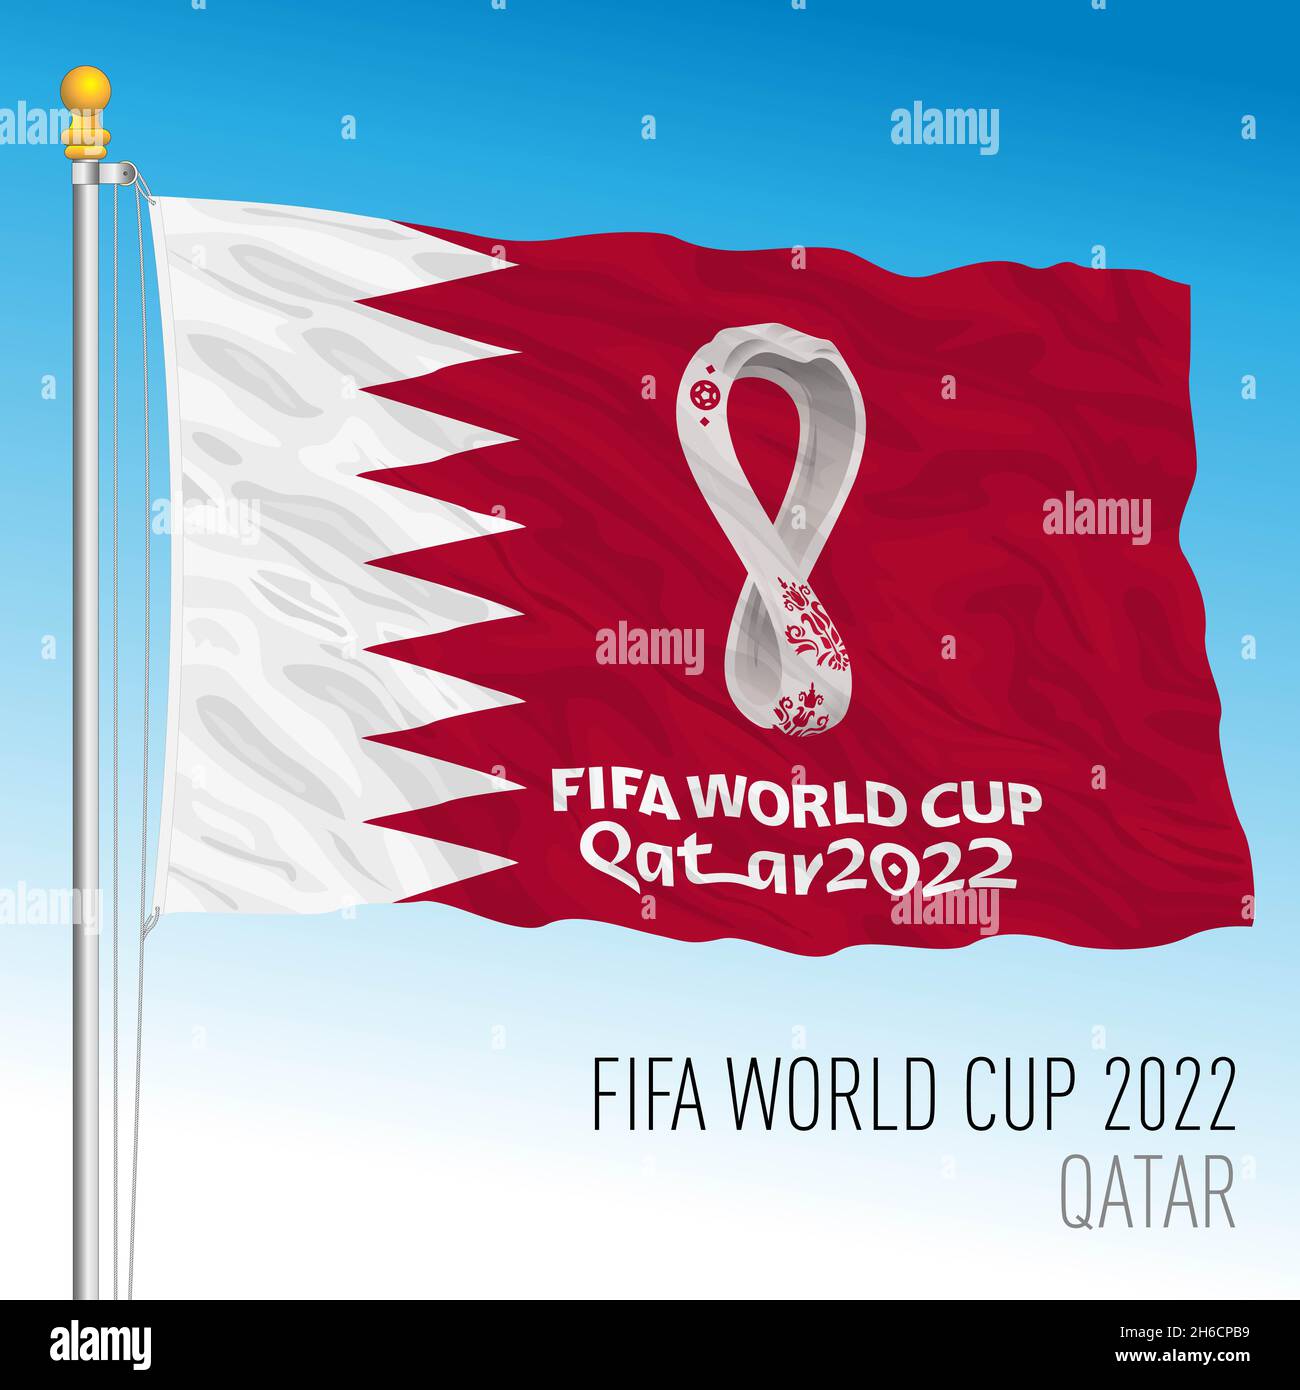 Qatar 2022 Stock Illustrations – 4,839 Qatar 2022 Stock